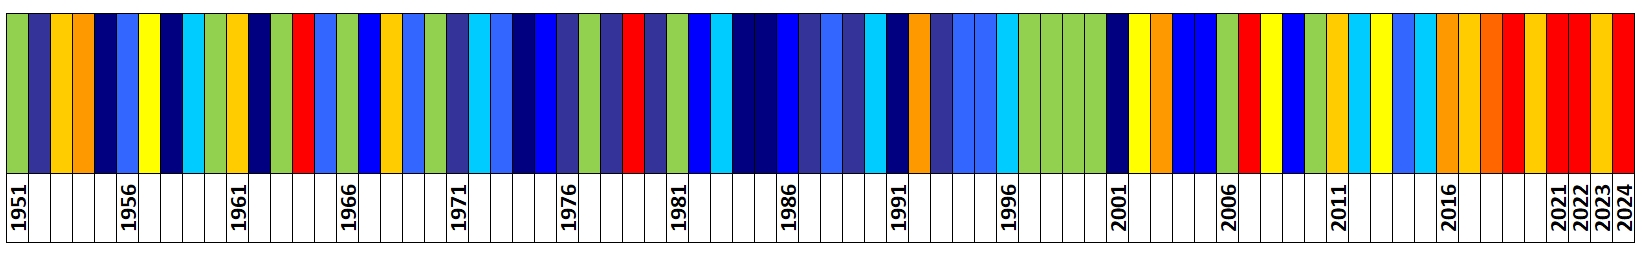 Klasyfikacja warunków termicznych w Polsce w czerwcu, w okresie 1951-2024, na podstawie norm okresu normalnego 1991-2020.